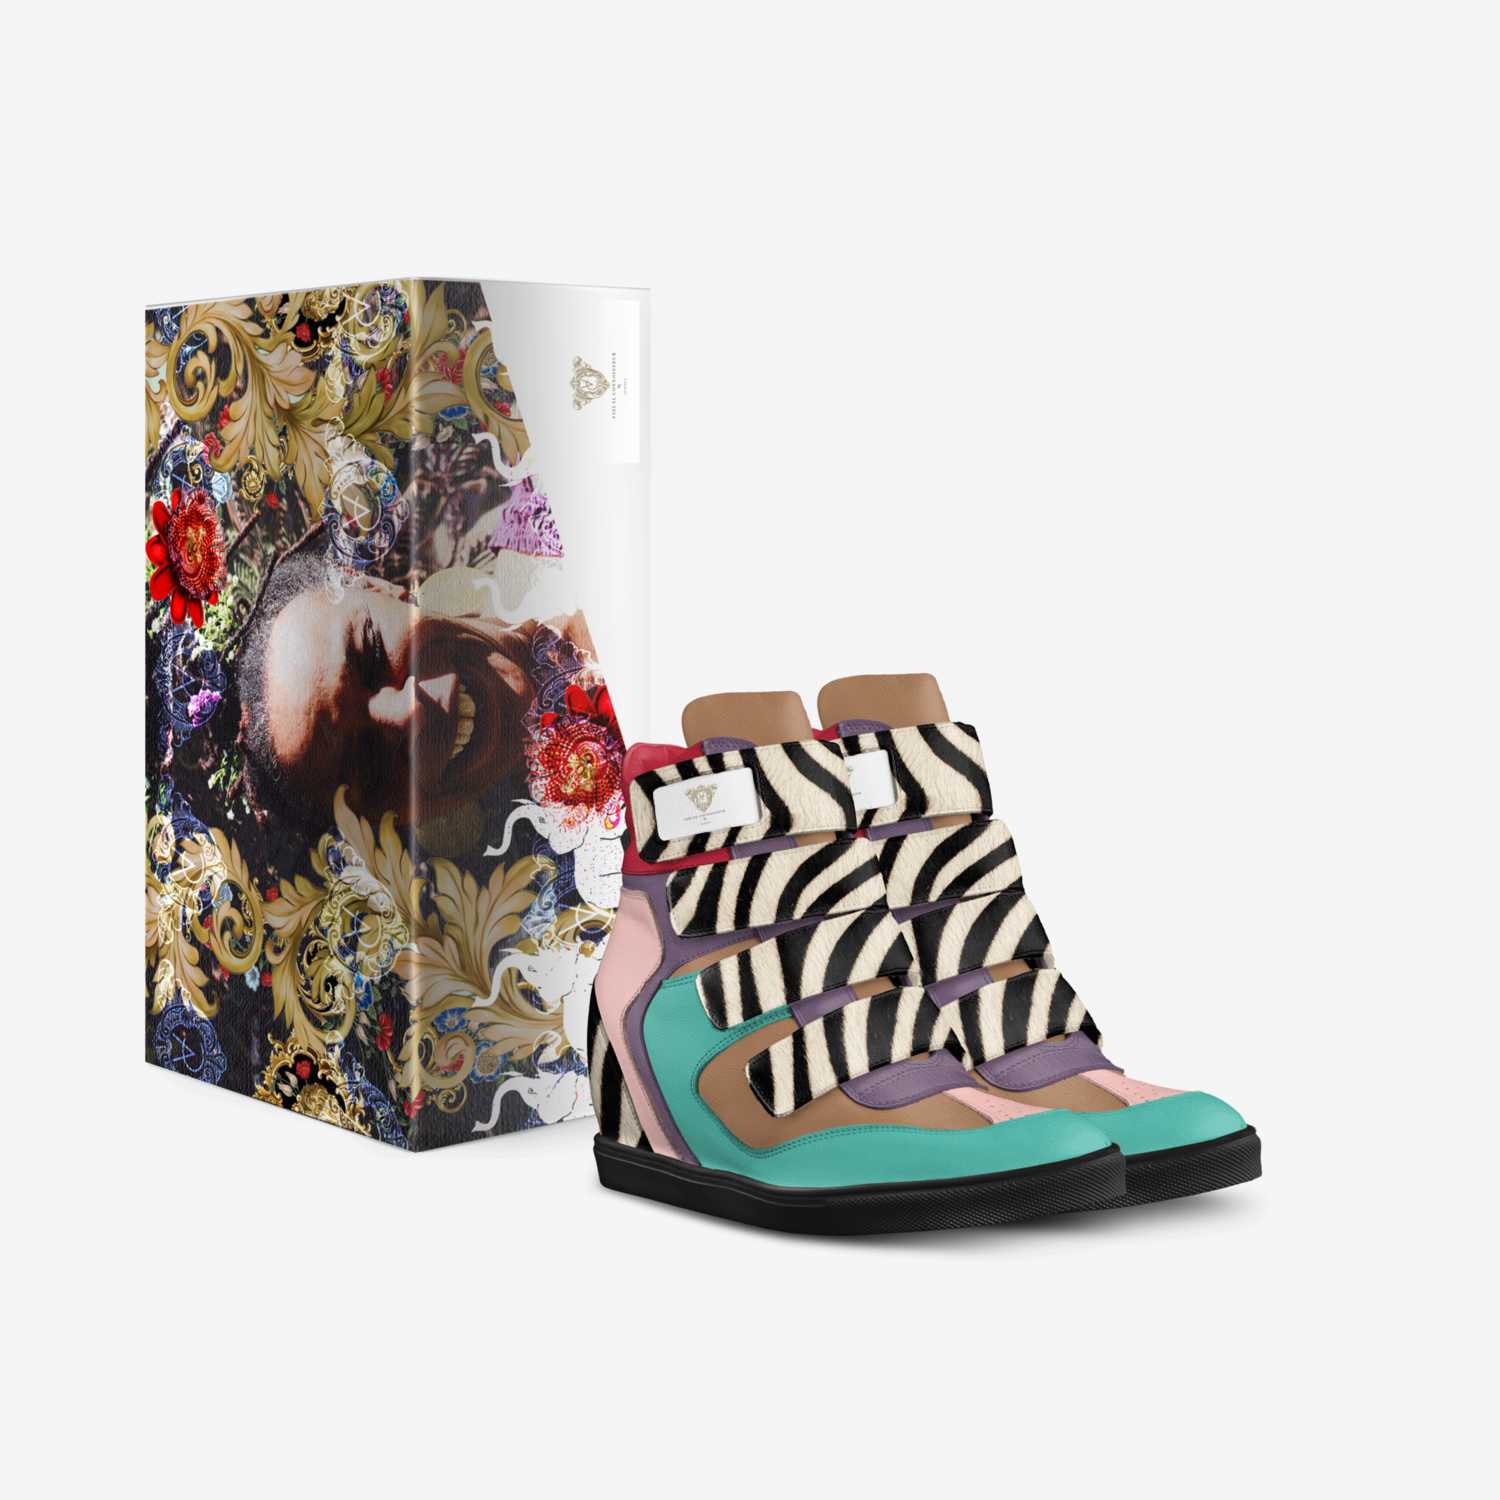 Nana Nita custom made in Italy shoes by Justin Johnson | Box view